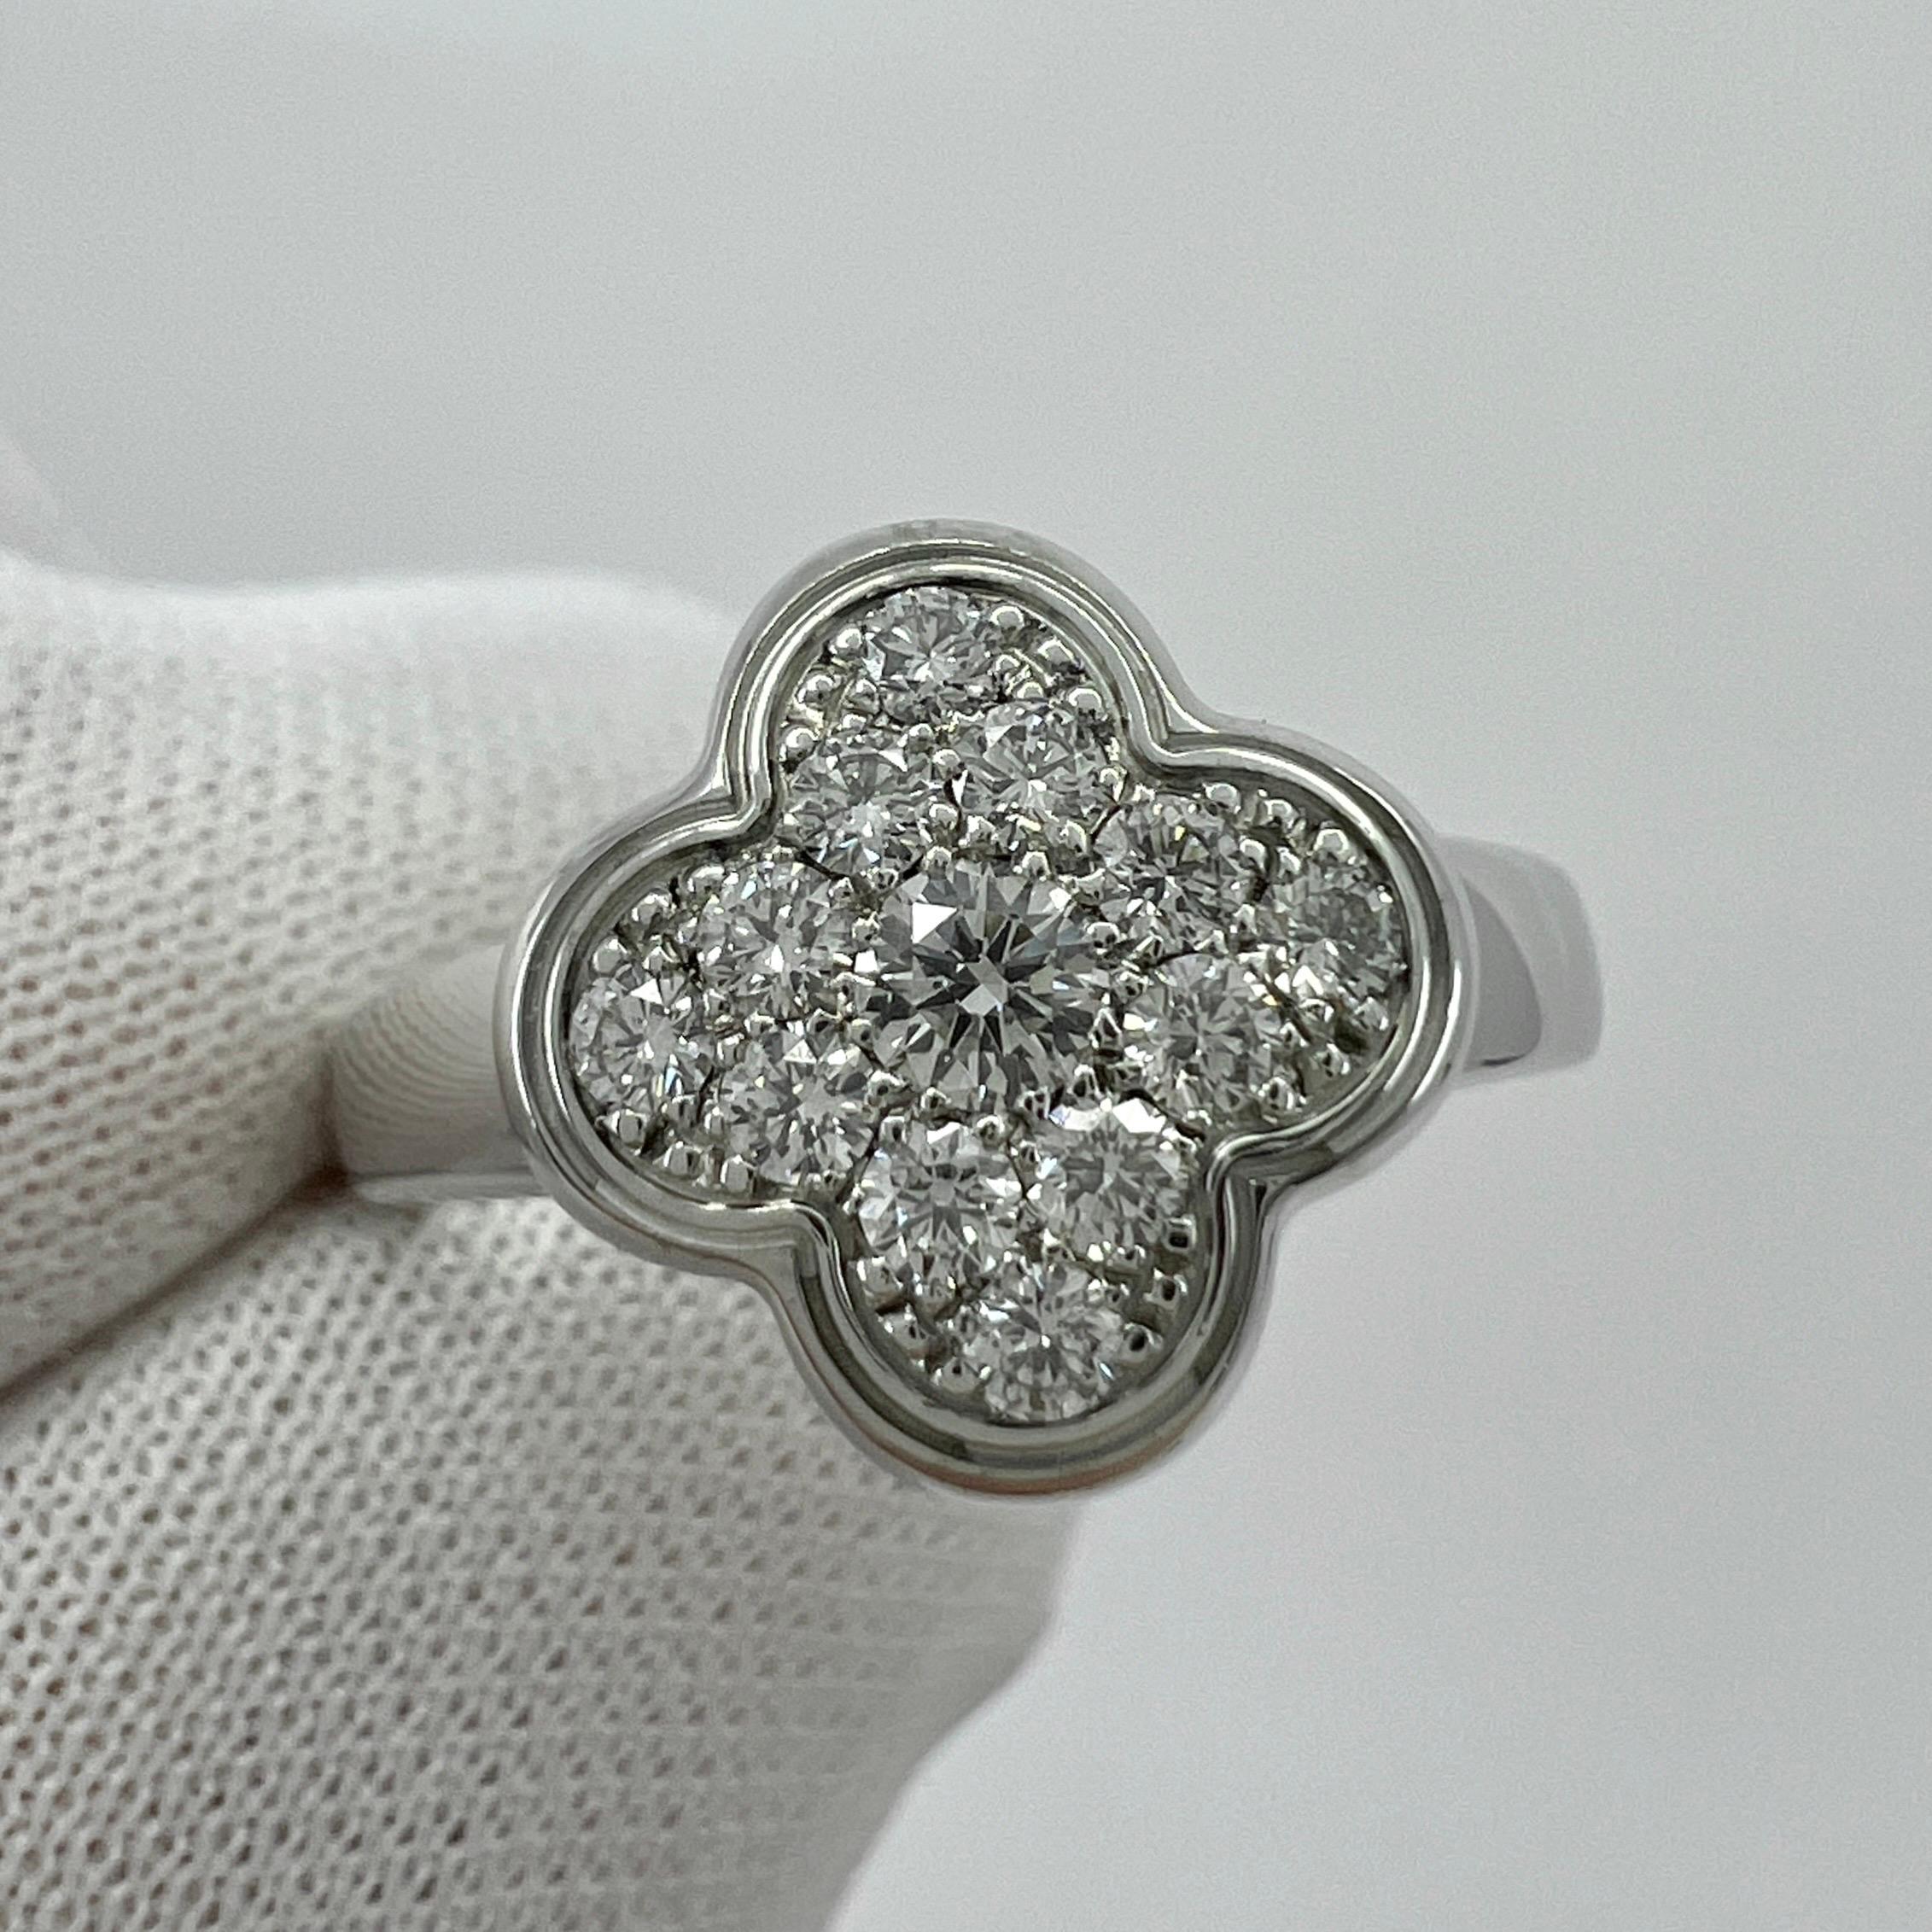 Vintage Van Cleef & Arpels Pure Alhambra Diamond 18 Karat White Gold Ring.

Une superbe bague vintage de la gamme Pure Alhambra de la maison française de haute joaillerie Van Cleef & Arpels. 

Le motif classique de la fleur est rempli de magnifiques